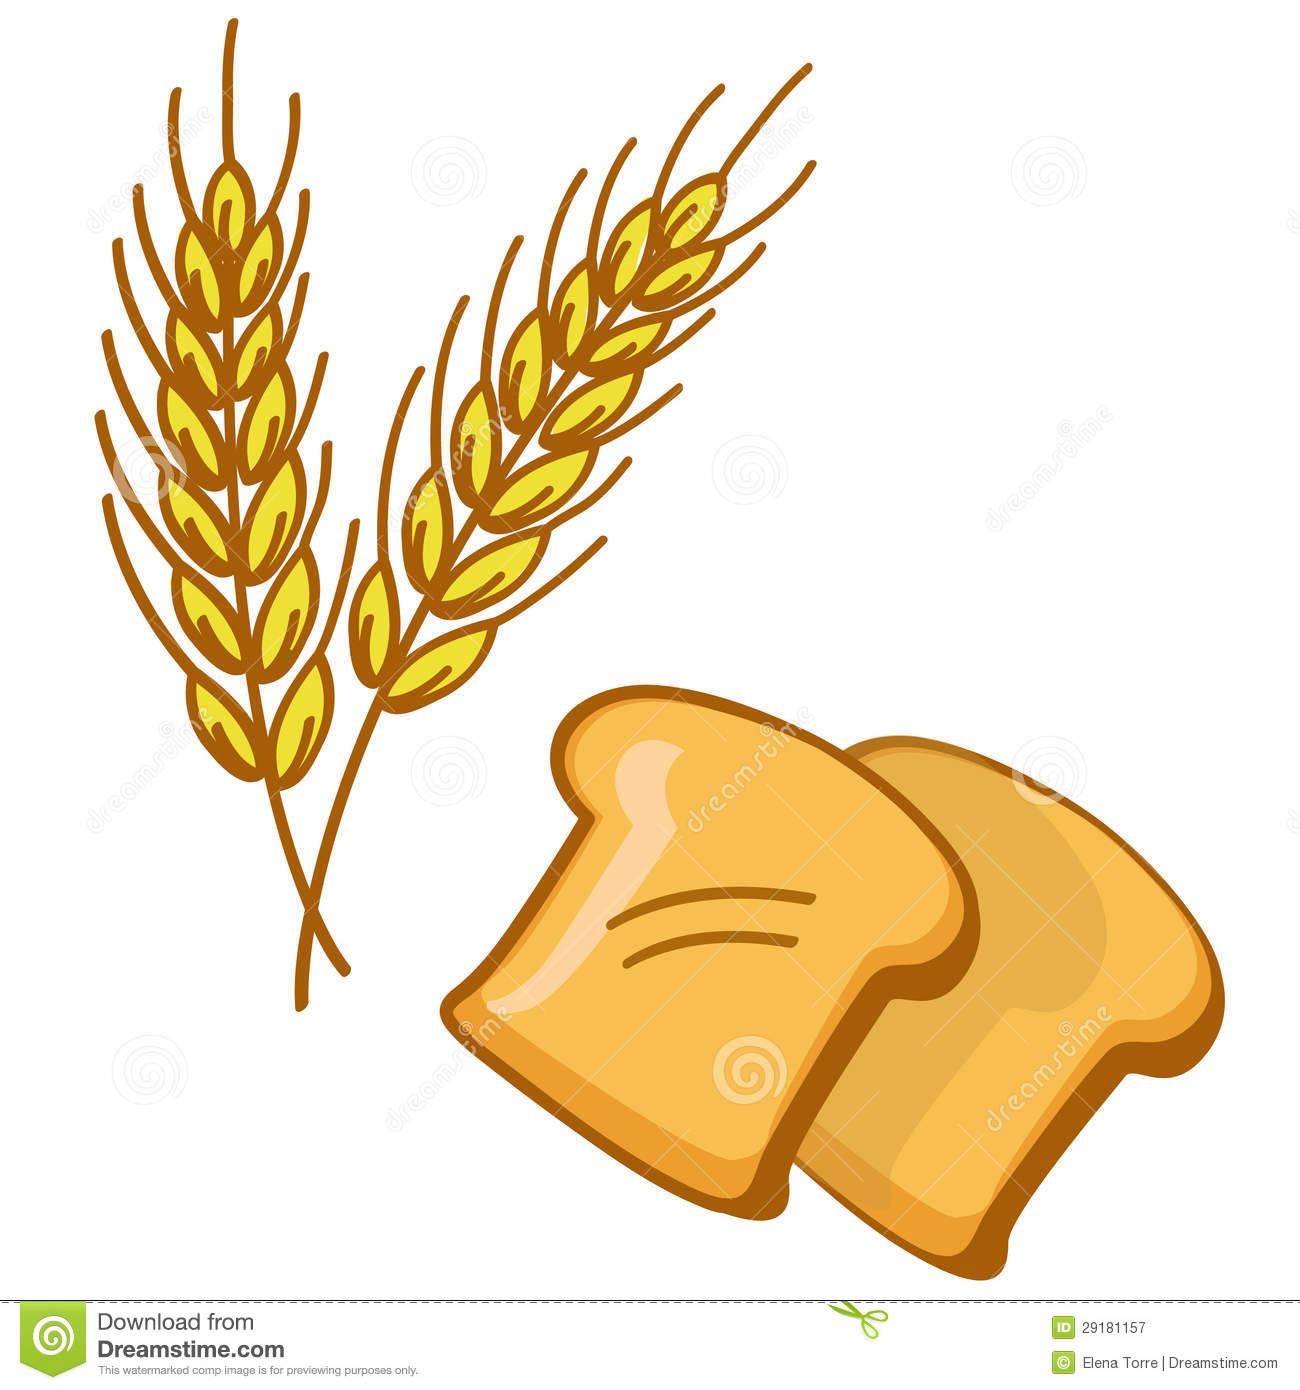 Wheat3